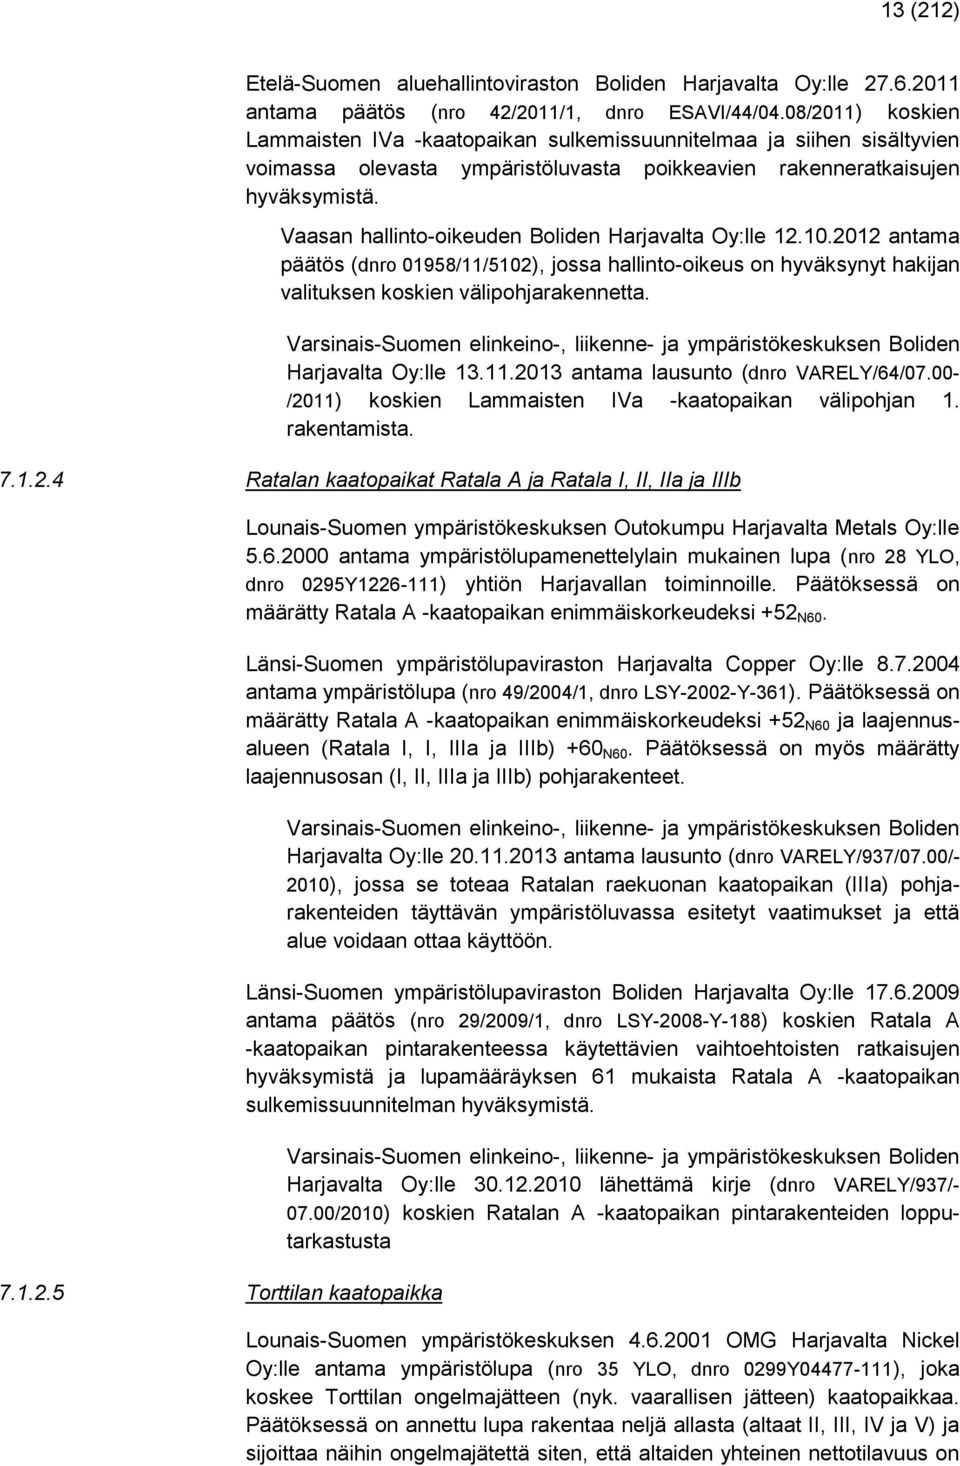 Vaasan hallinto-oikeuden Boliden Harjavalta Oy:lle 12.10.2012 antama päätös (dnro 01958/11/5102), jossa hallinto-oikeus on hyväksynyt hakijan valituksen koskien välipohjarakennetta.